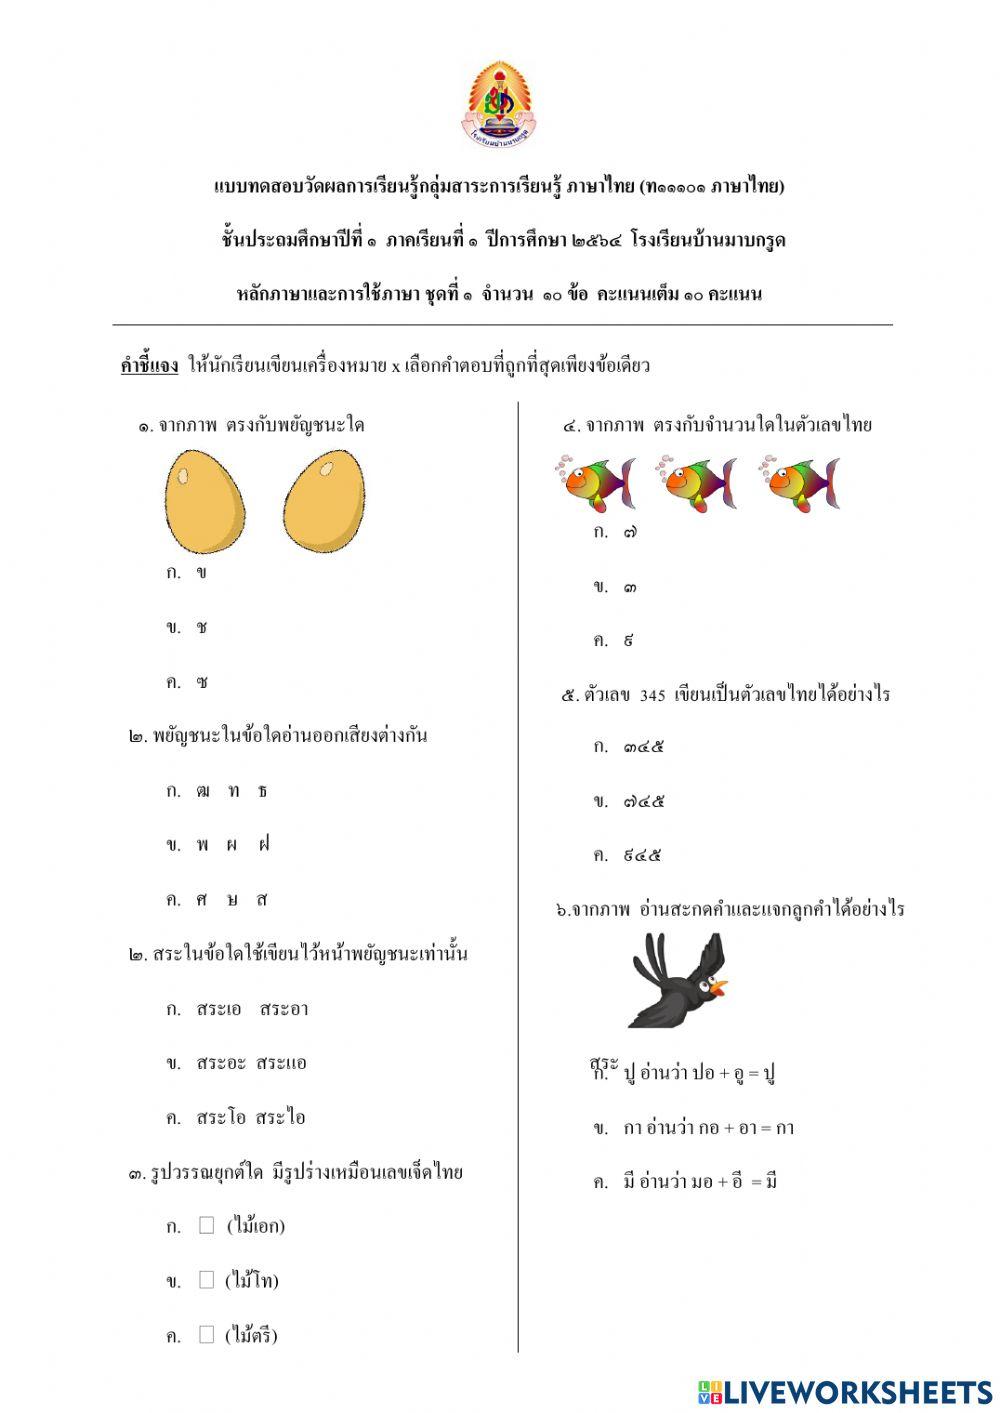 แบบทดสอบภาษาไทย ชุดที่1